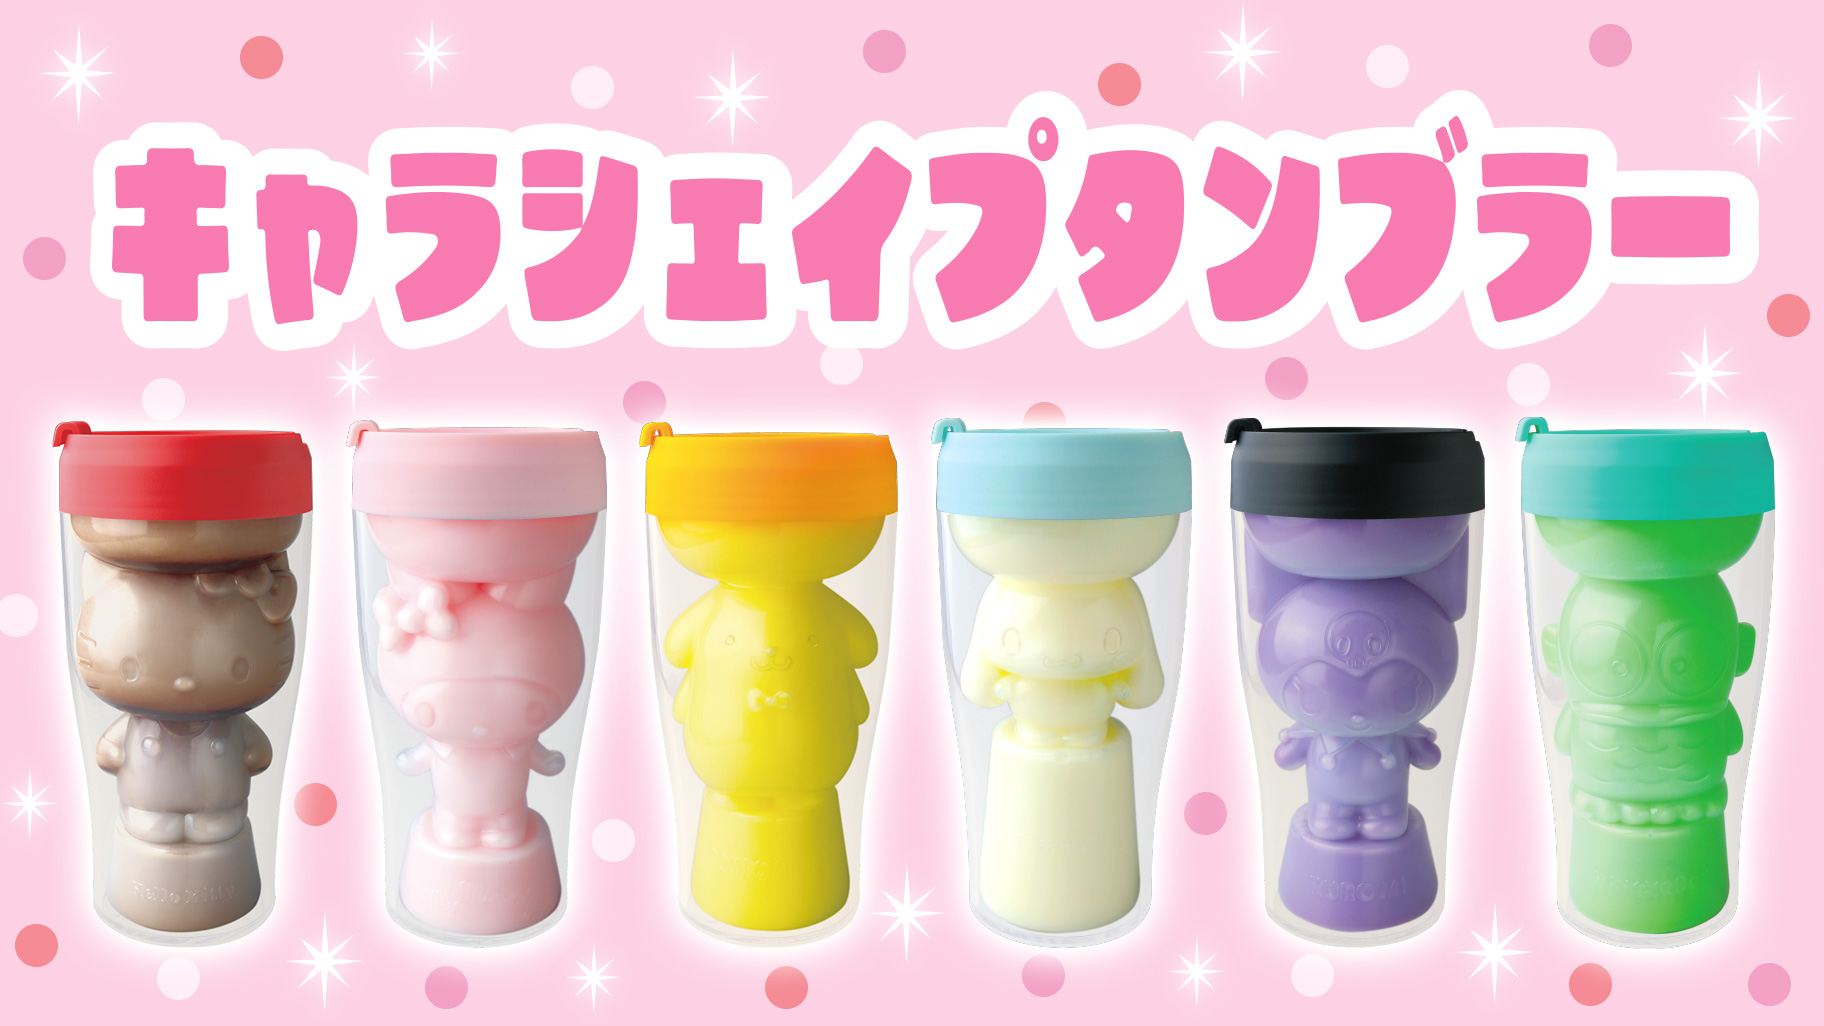 人物造型透明隨行杯-三麗鷗 Sanrio 日本進口正版授權